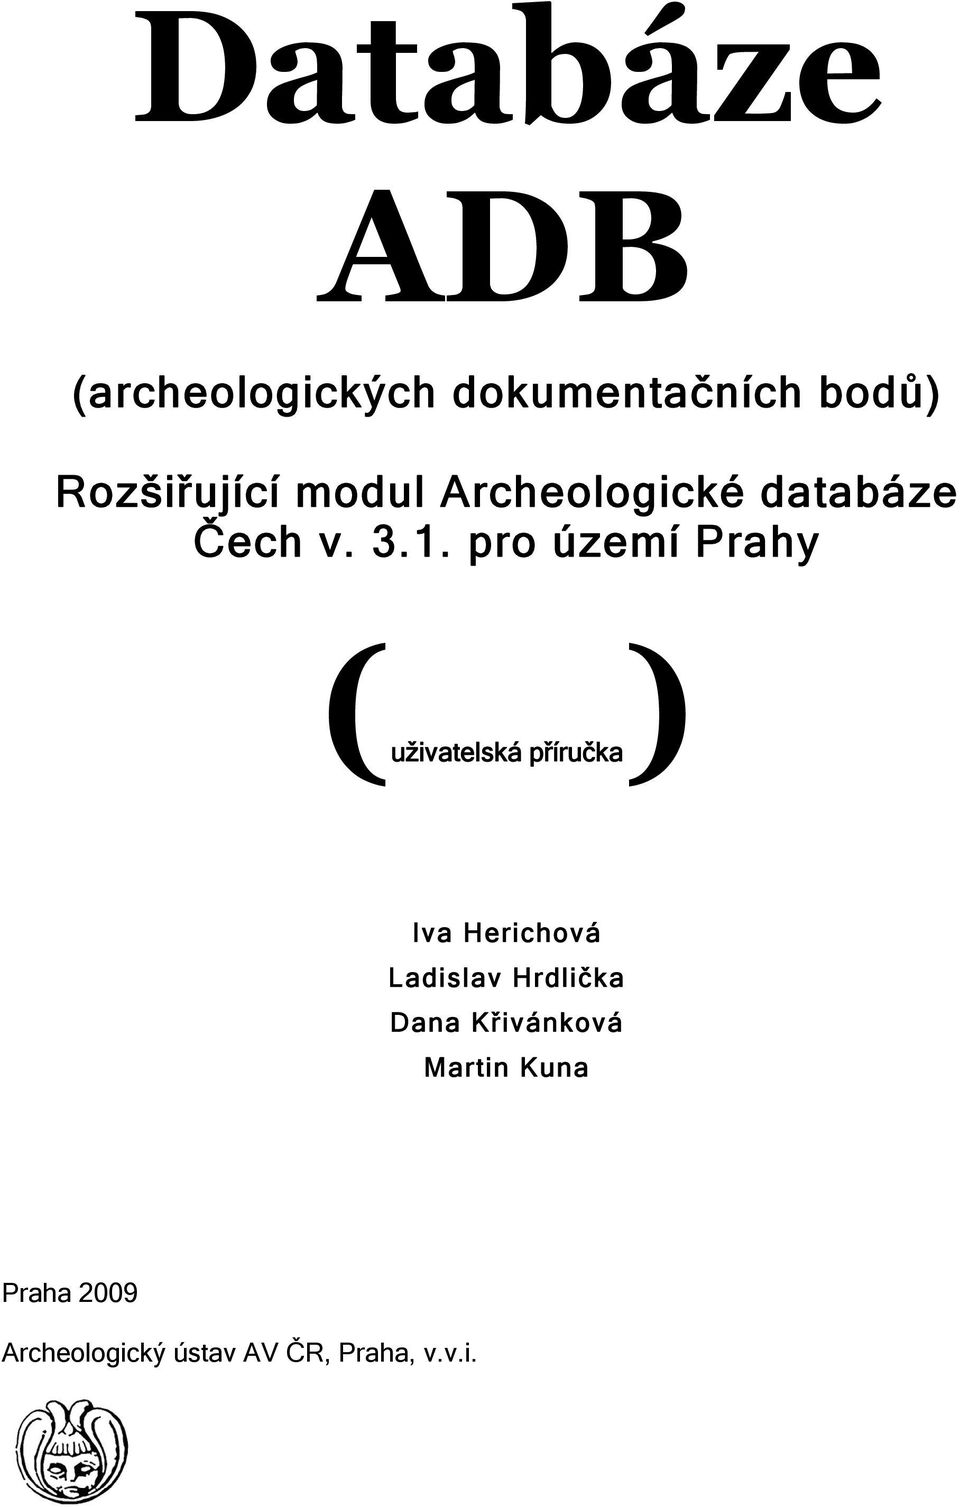 pro území Prahy (uživatelská příručka) Iva Herichová Ladislav